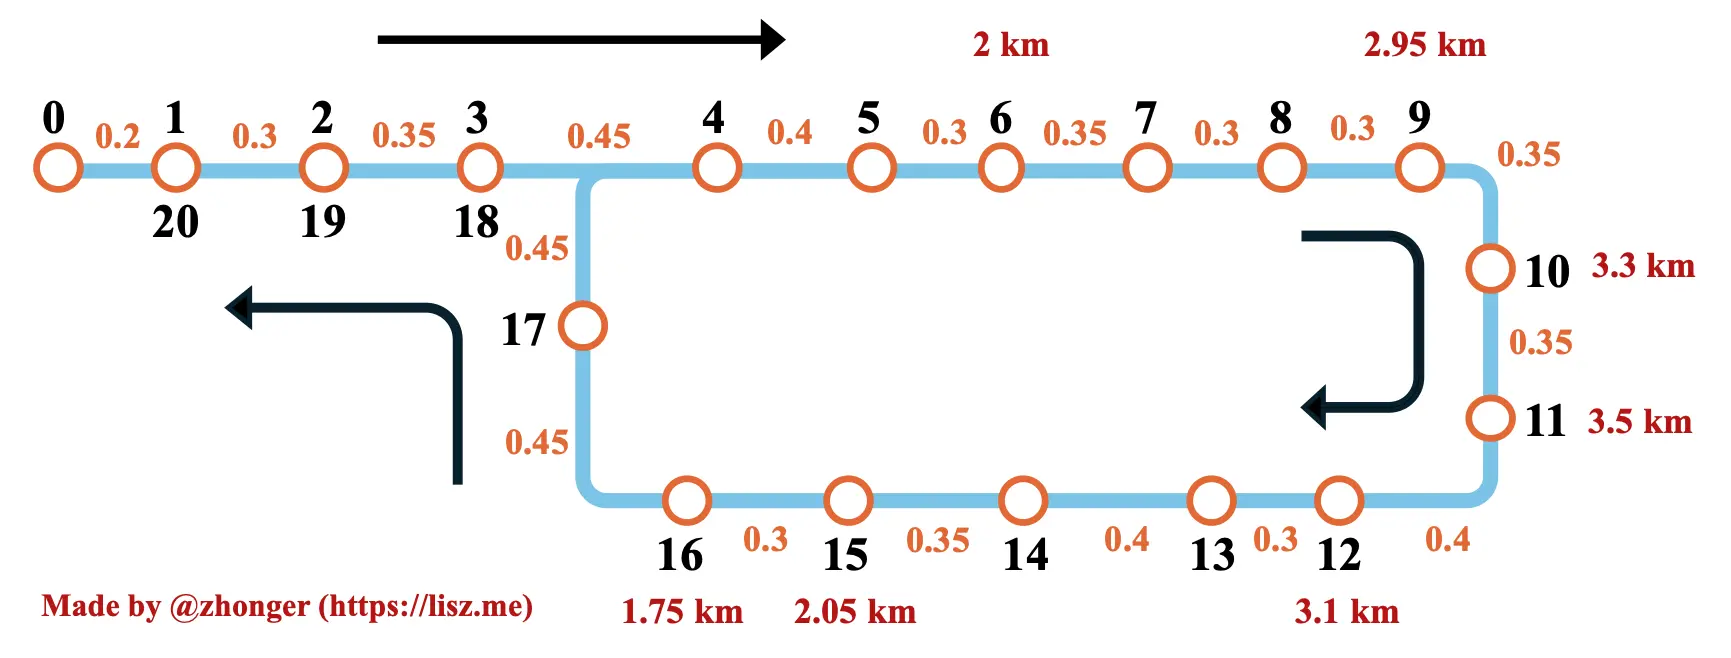 图 2. 信息集成后的公交路线图。 The route including the distances and some importance valid distances.